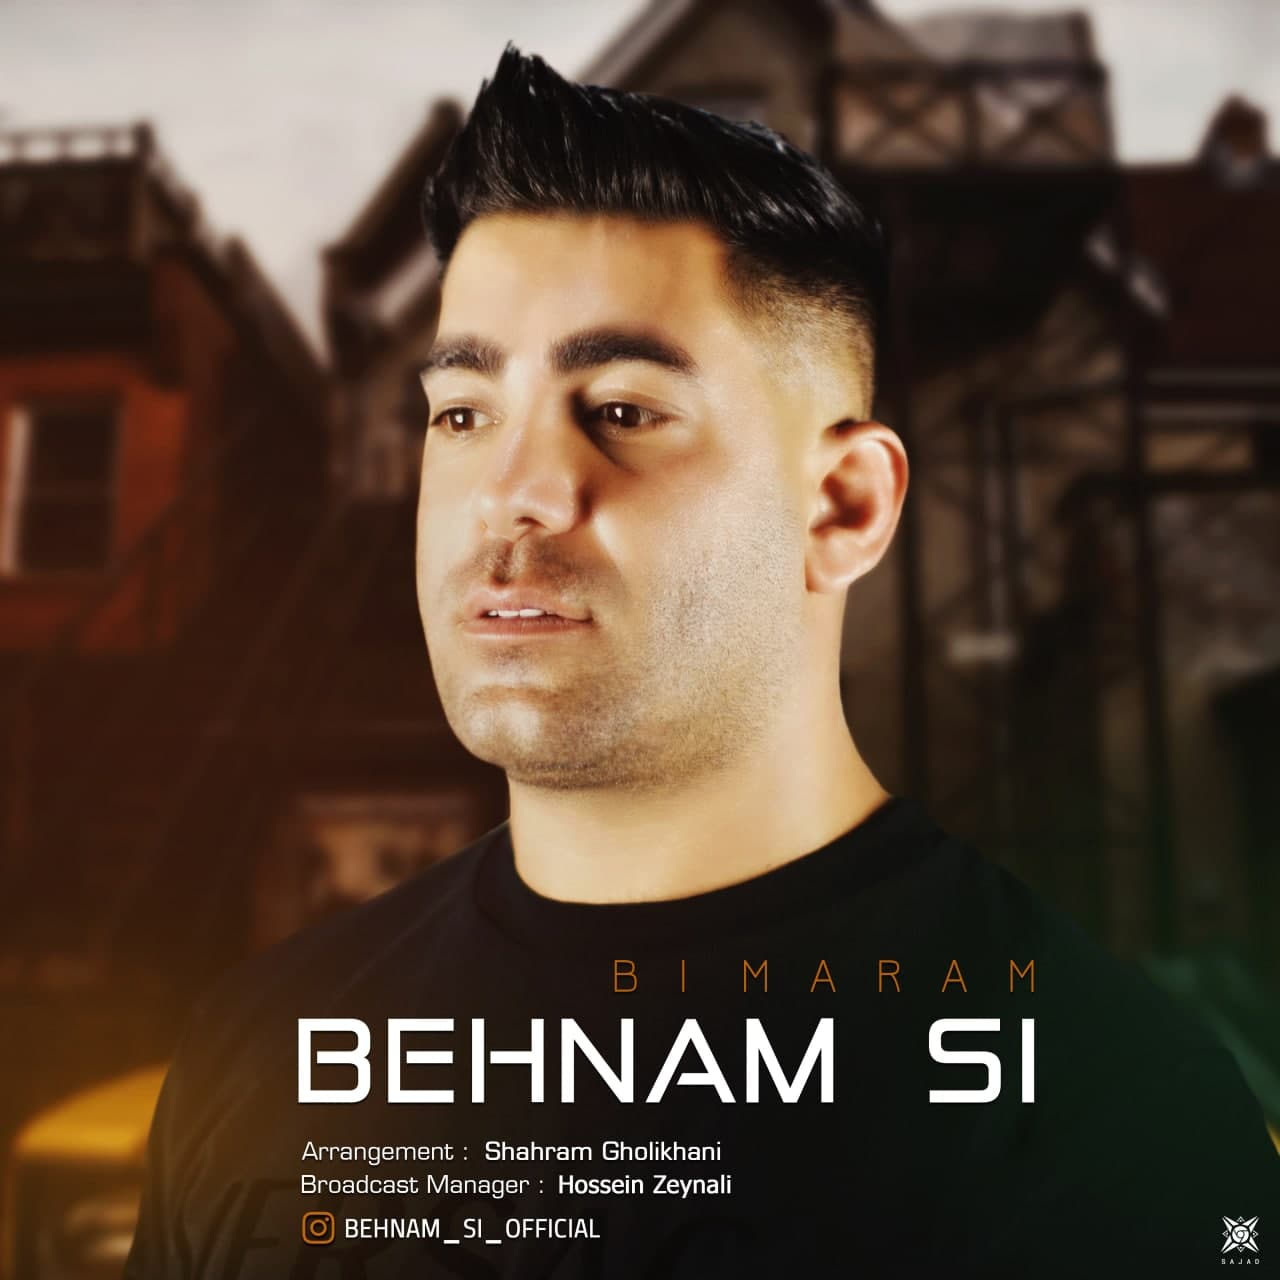  دانلود آهنگ جدید بهنام اِس آی - بی مرام | Download New Music By Behnam Si - Bi Maram